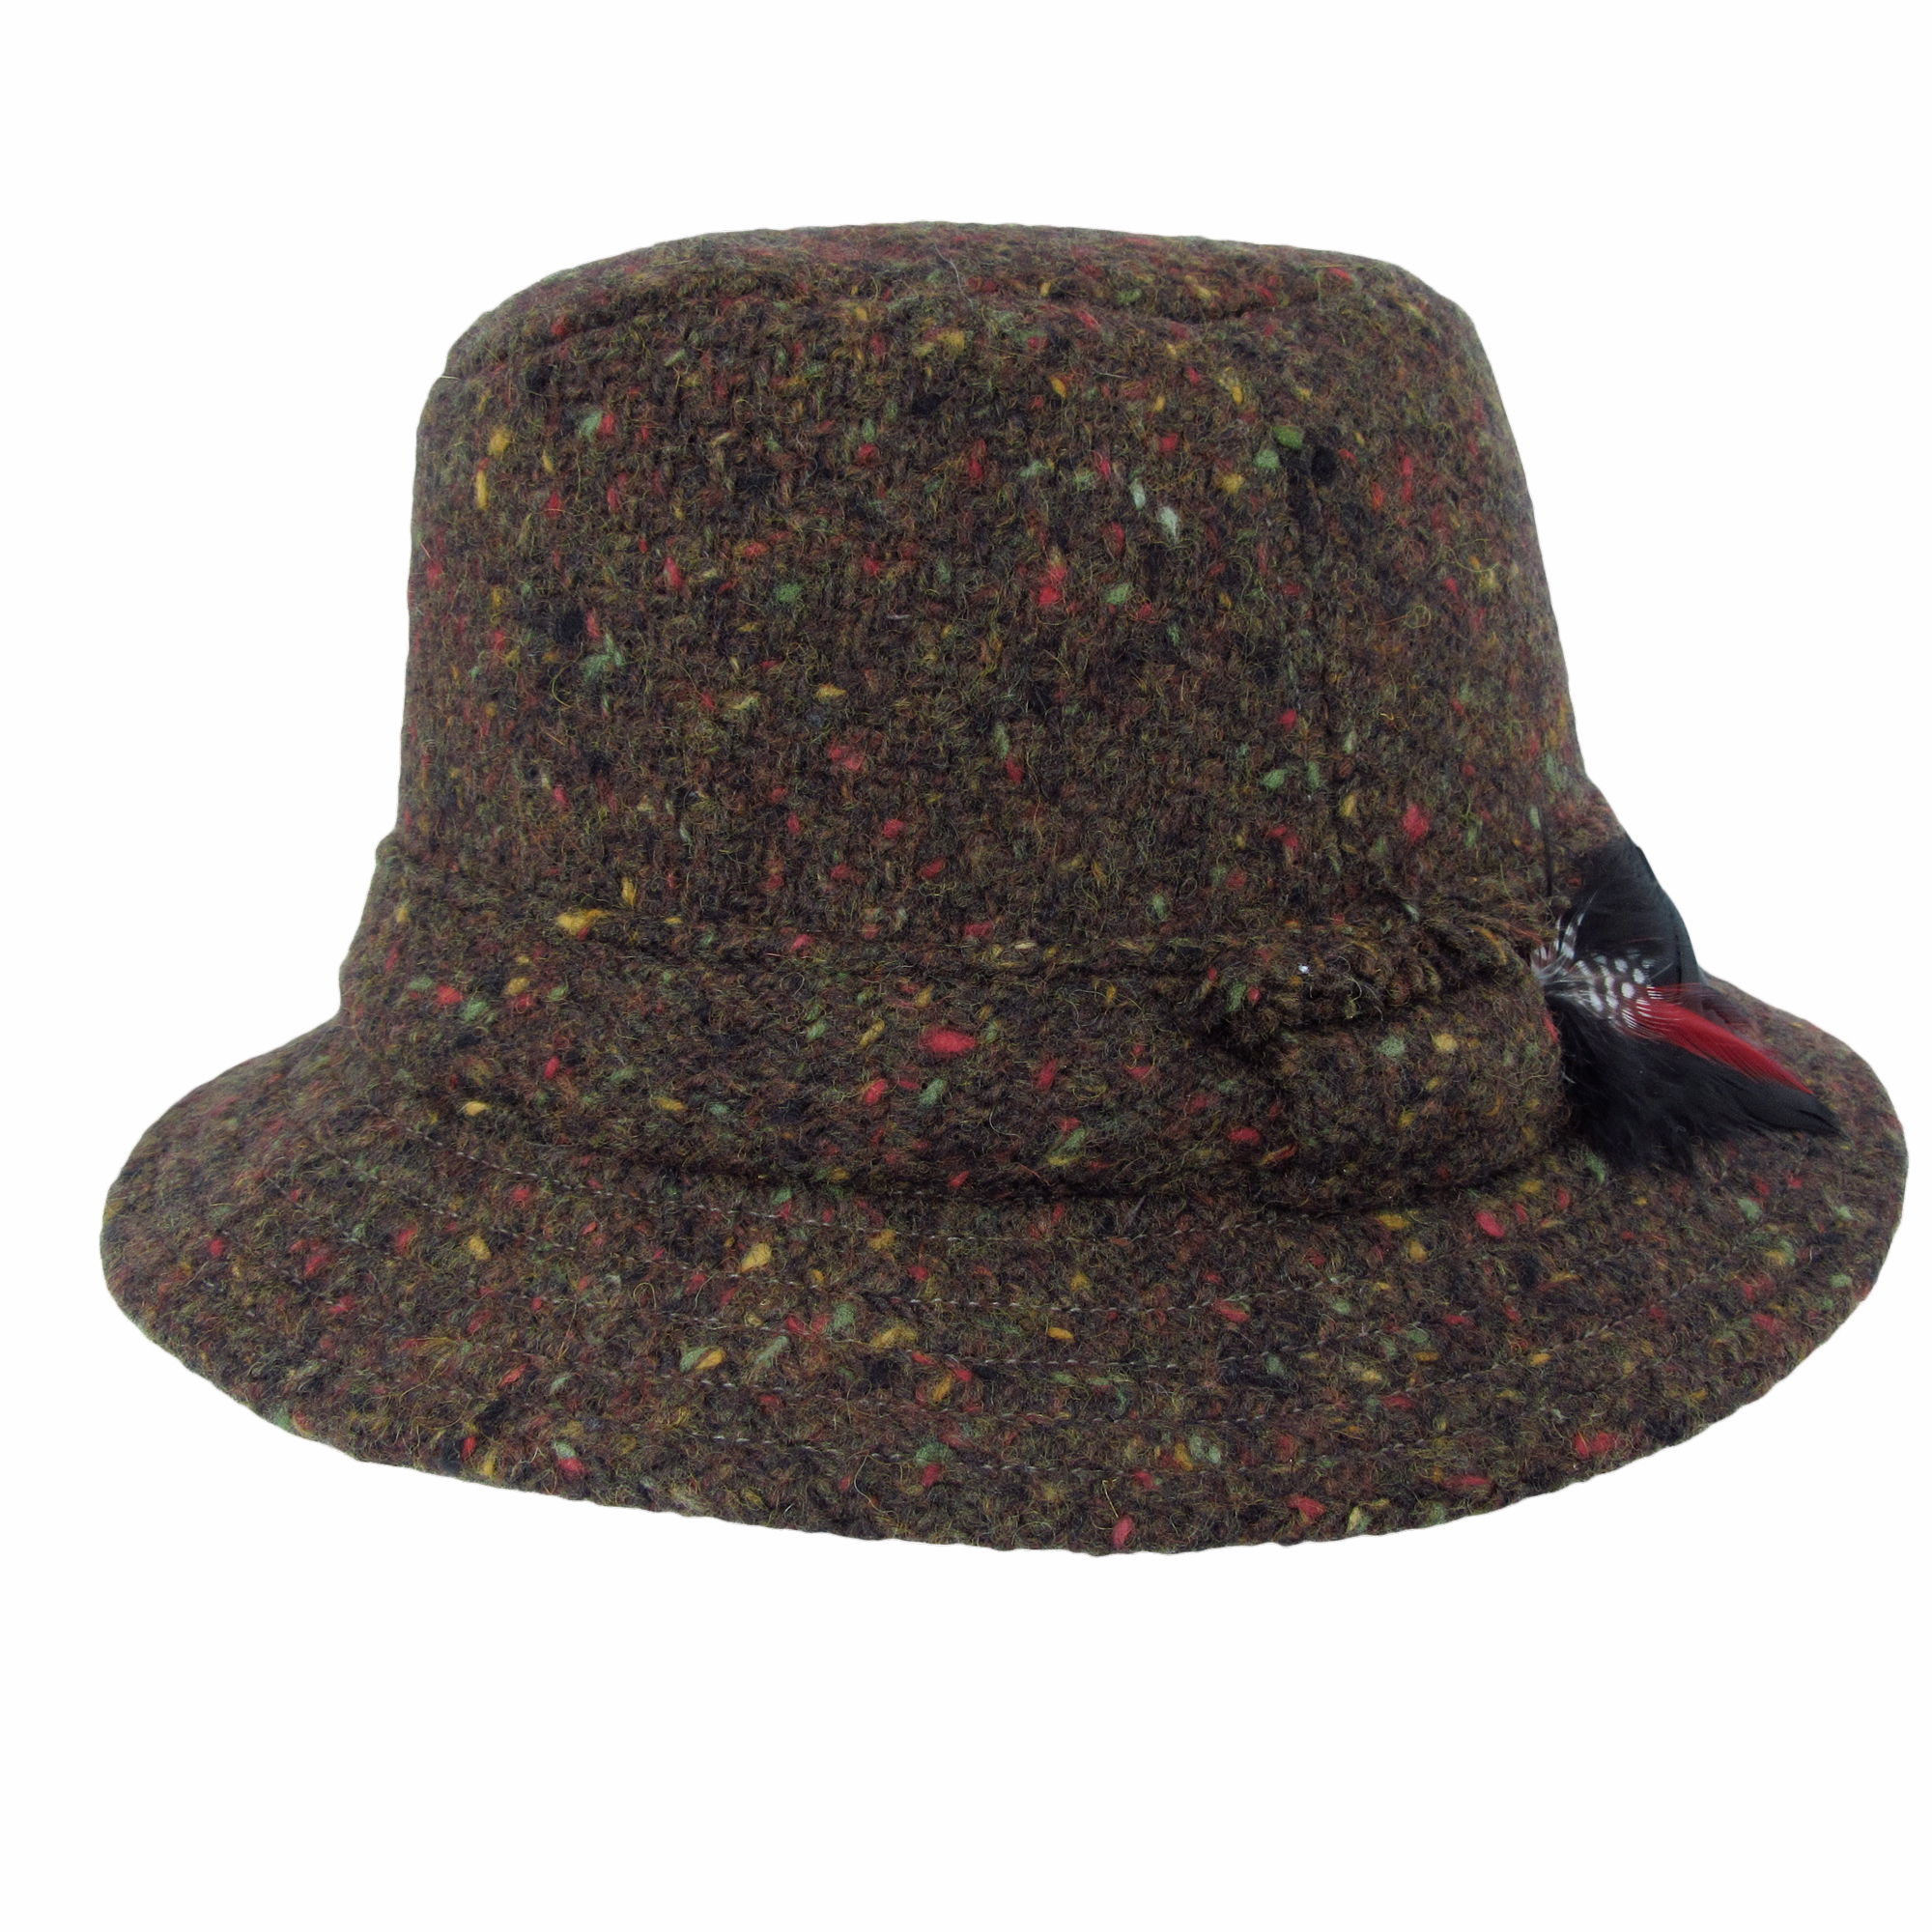 Hanna of Ireland Wool Walking Hat - Holland Hats